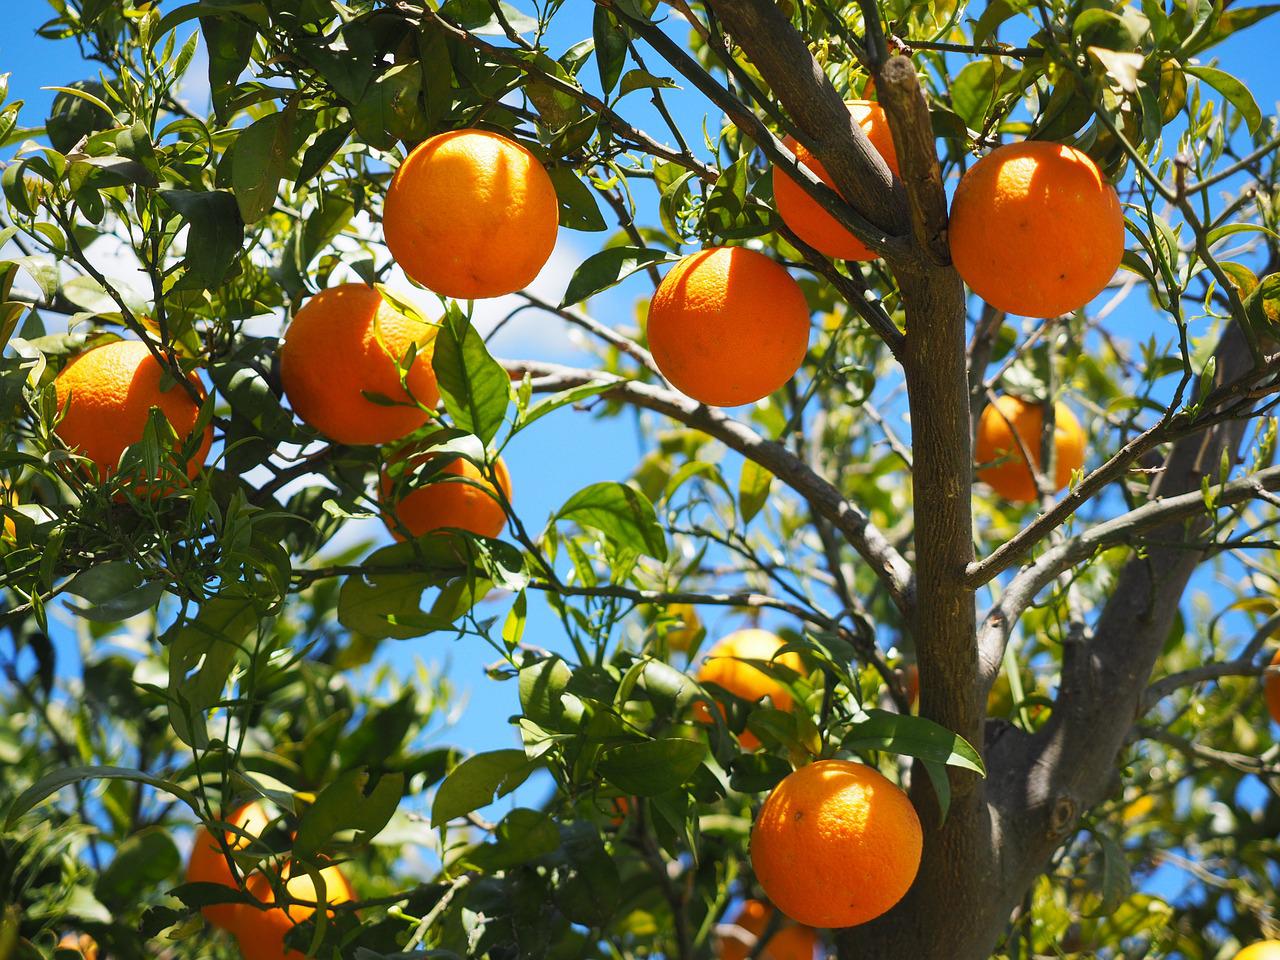 bosques comestibles de naranjas